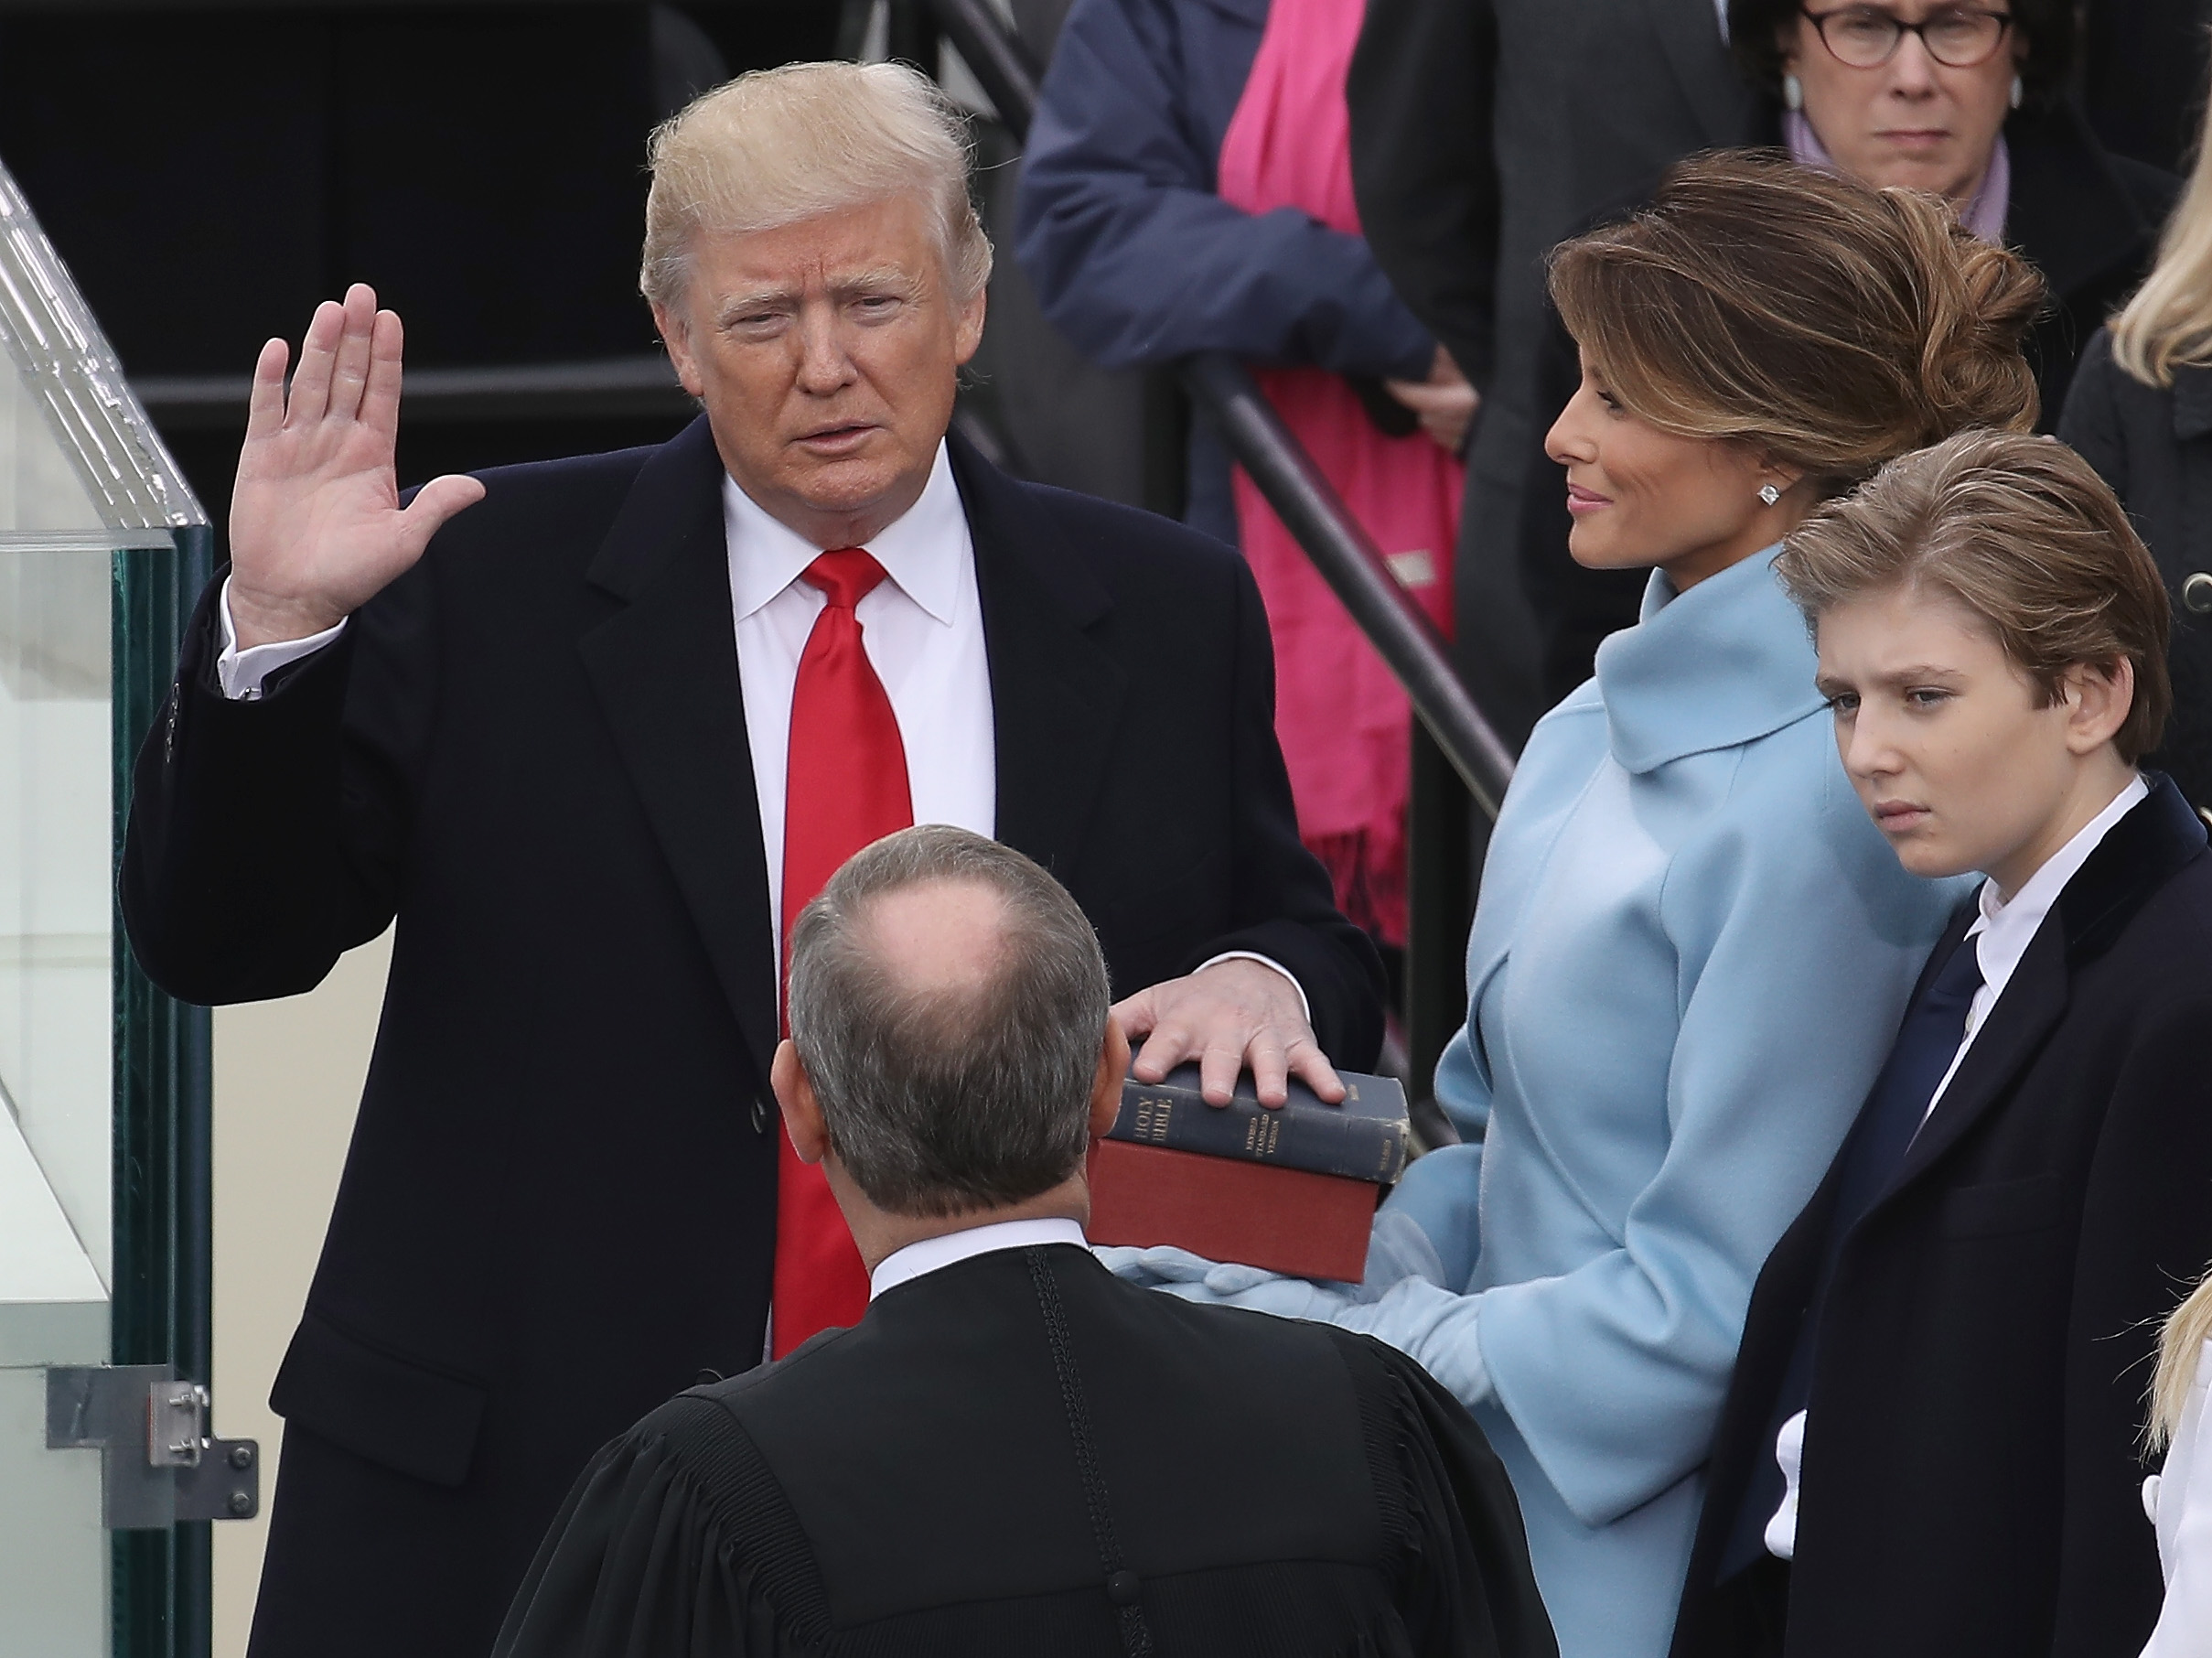 واشنگتن ، دی سی - 20 ژانویه: قاضی دادگاه عالی جان رابرتز (2L) رئیس جمهور ایالات متحده دونالد ترامپ (L) سوگند یاد کرد در حالی که همسرش ملانیا ترامپ کتاب مقدس در دست دارد و پسرش بارون ترامپ جبهه غربی کاپیتول غربی 2017 را تماشا می کند. در واشنگتن  در مراسم تحلیف امروز ، دونالد جی.  ترامپ چهل و پنجمین رئیس جمهور ایالات متحده می شود.  (عکس از درو آنگرر / گتی ایماژ)